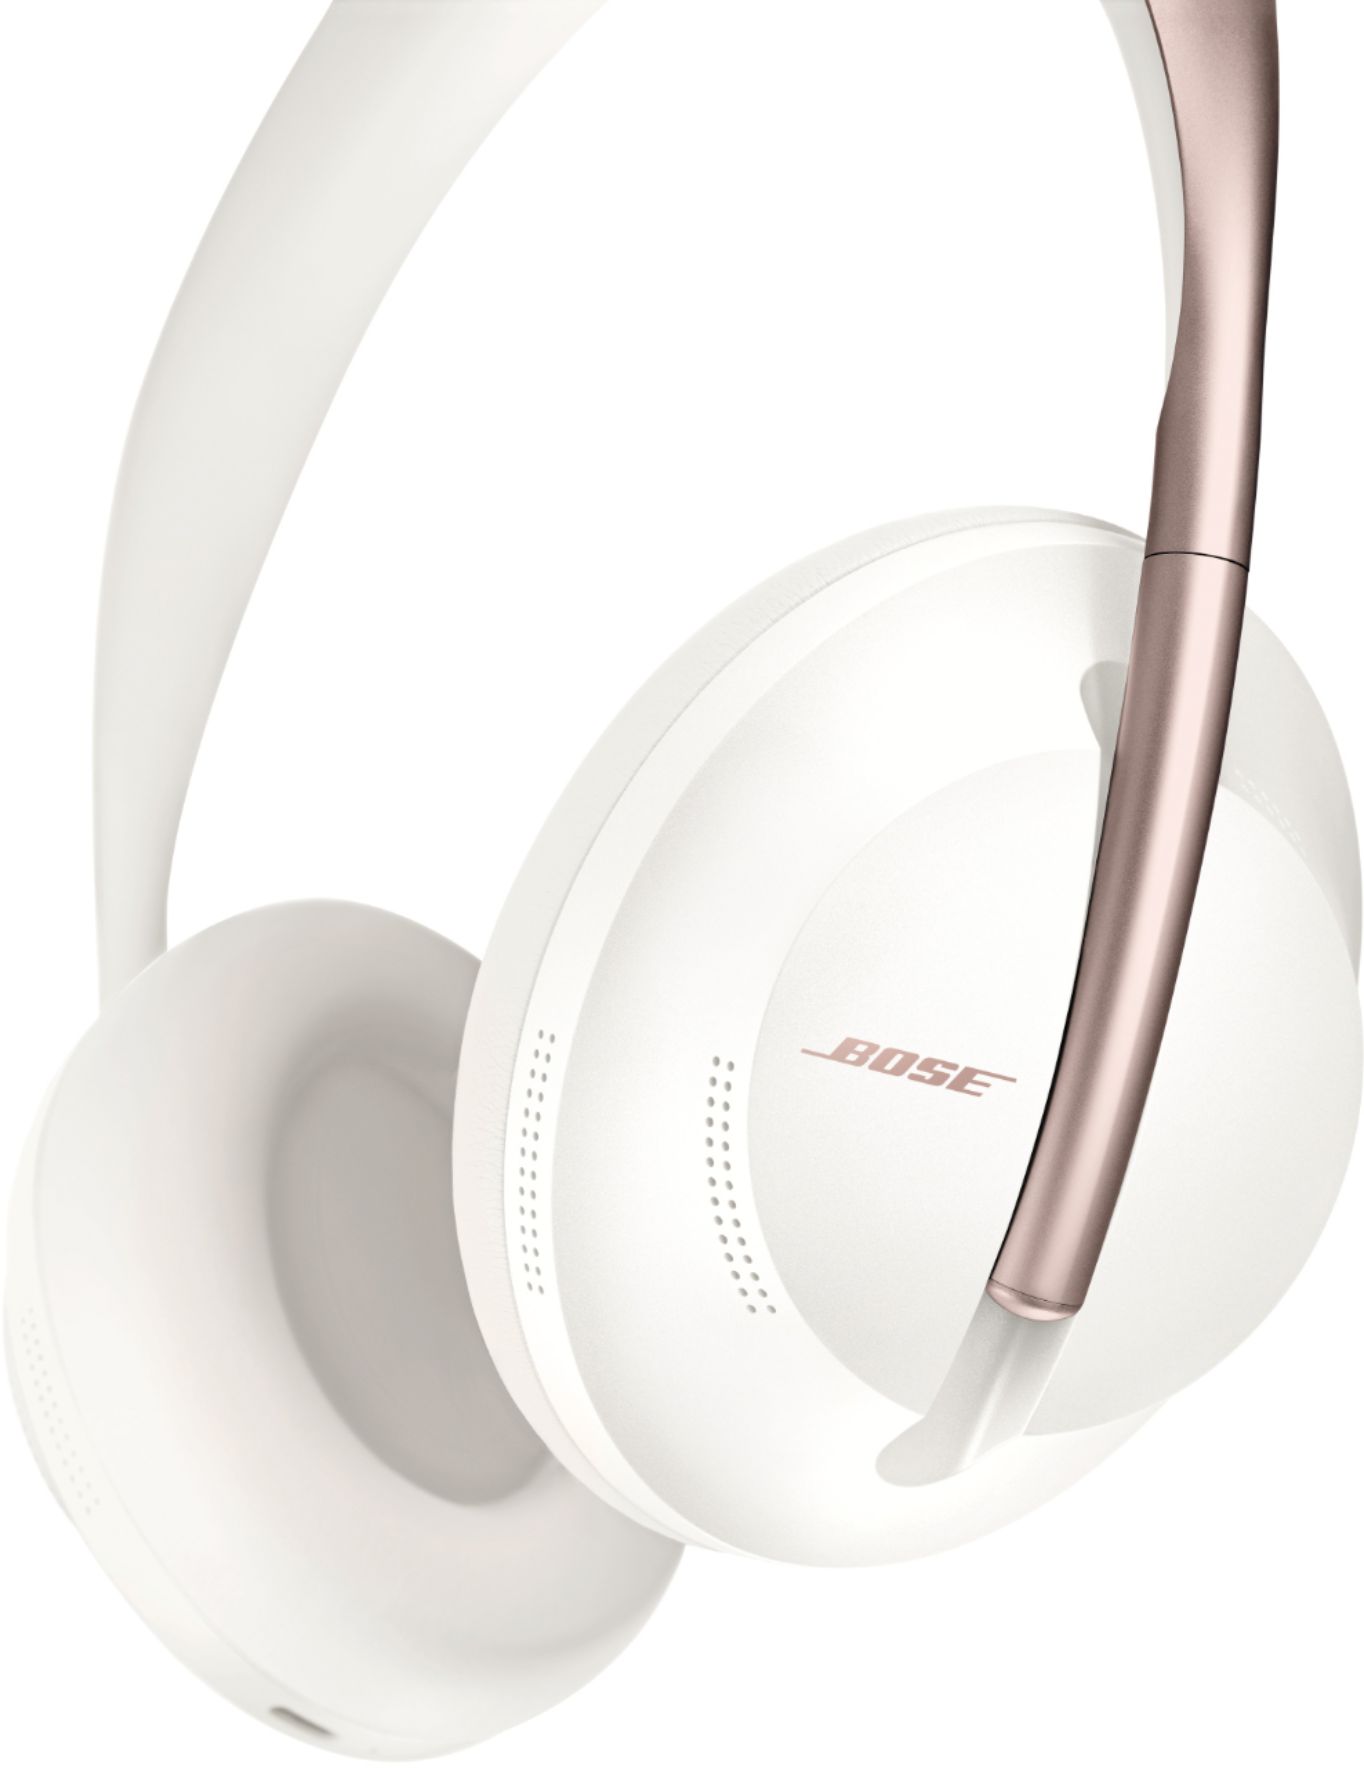 オーディオ機器 ヘッドフォン Best Buy: Bose Headphones 700 Wireless Noise Cancelling Over-the 